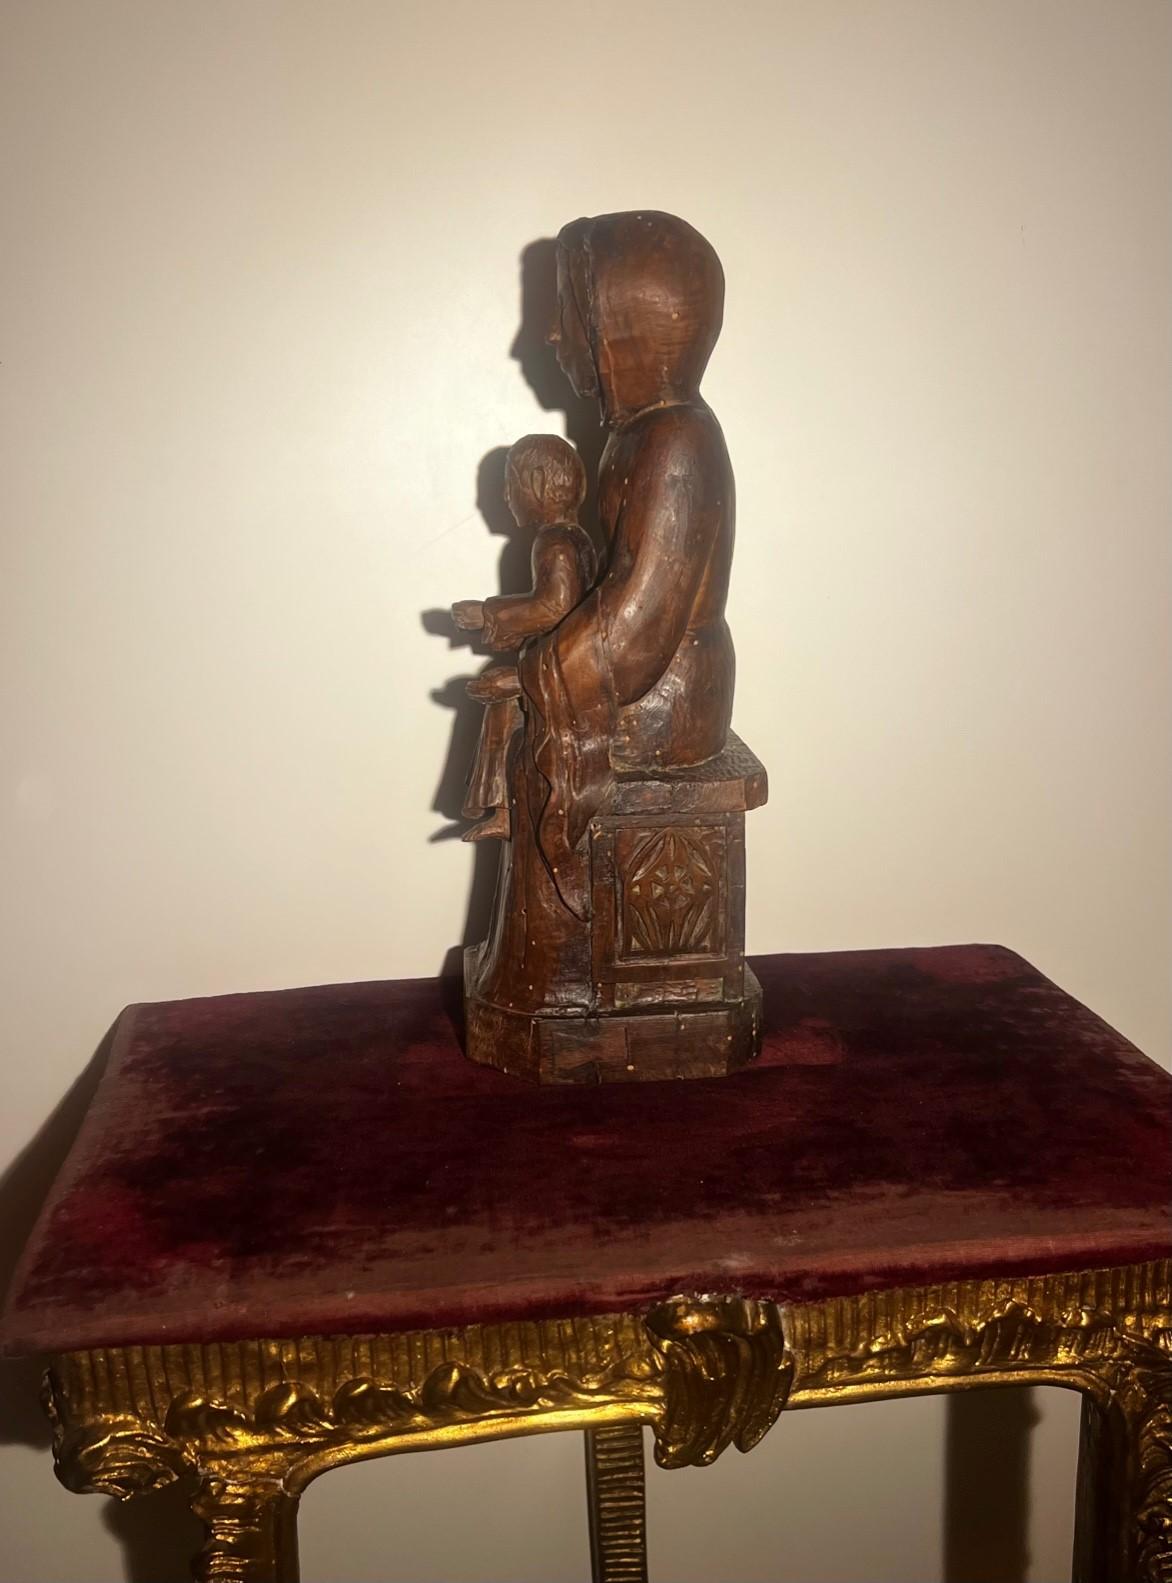 Cette extraordinaire pièce de musée, la Vierge Marie trônant avec l'enfant sur ses genoux, provient de la région du Rhône en France. Symbole de la sainteté et protectrice de la France, cette statue de la Madone a été trouvée avec un tabernacle (le